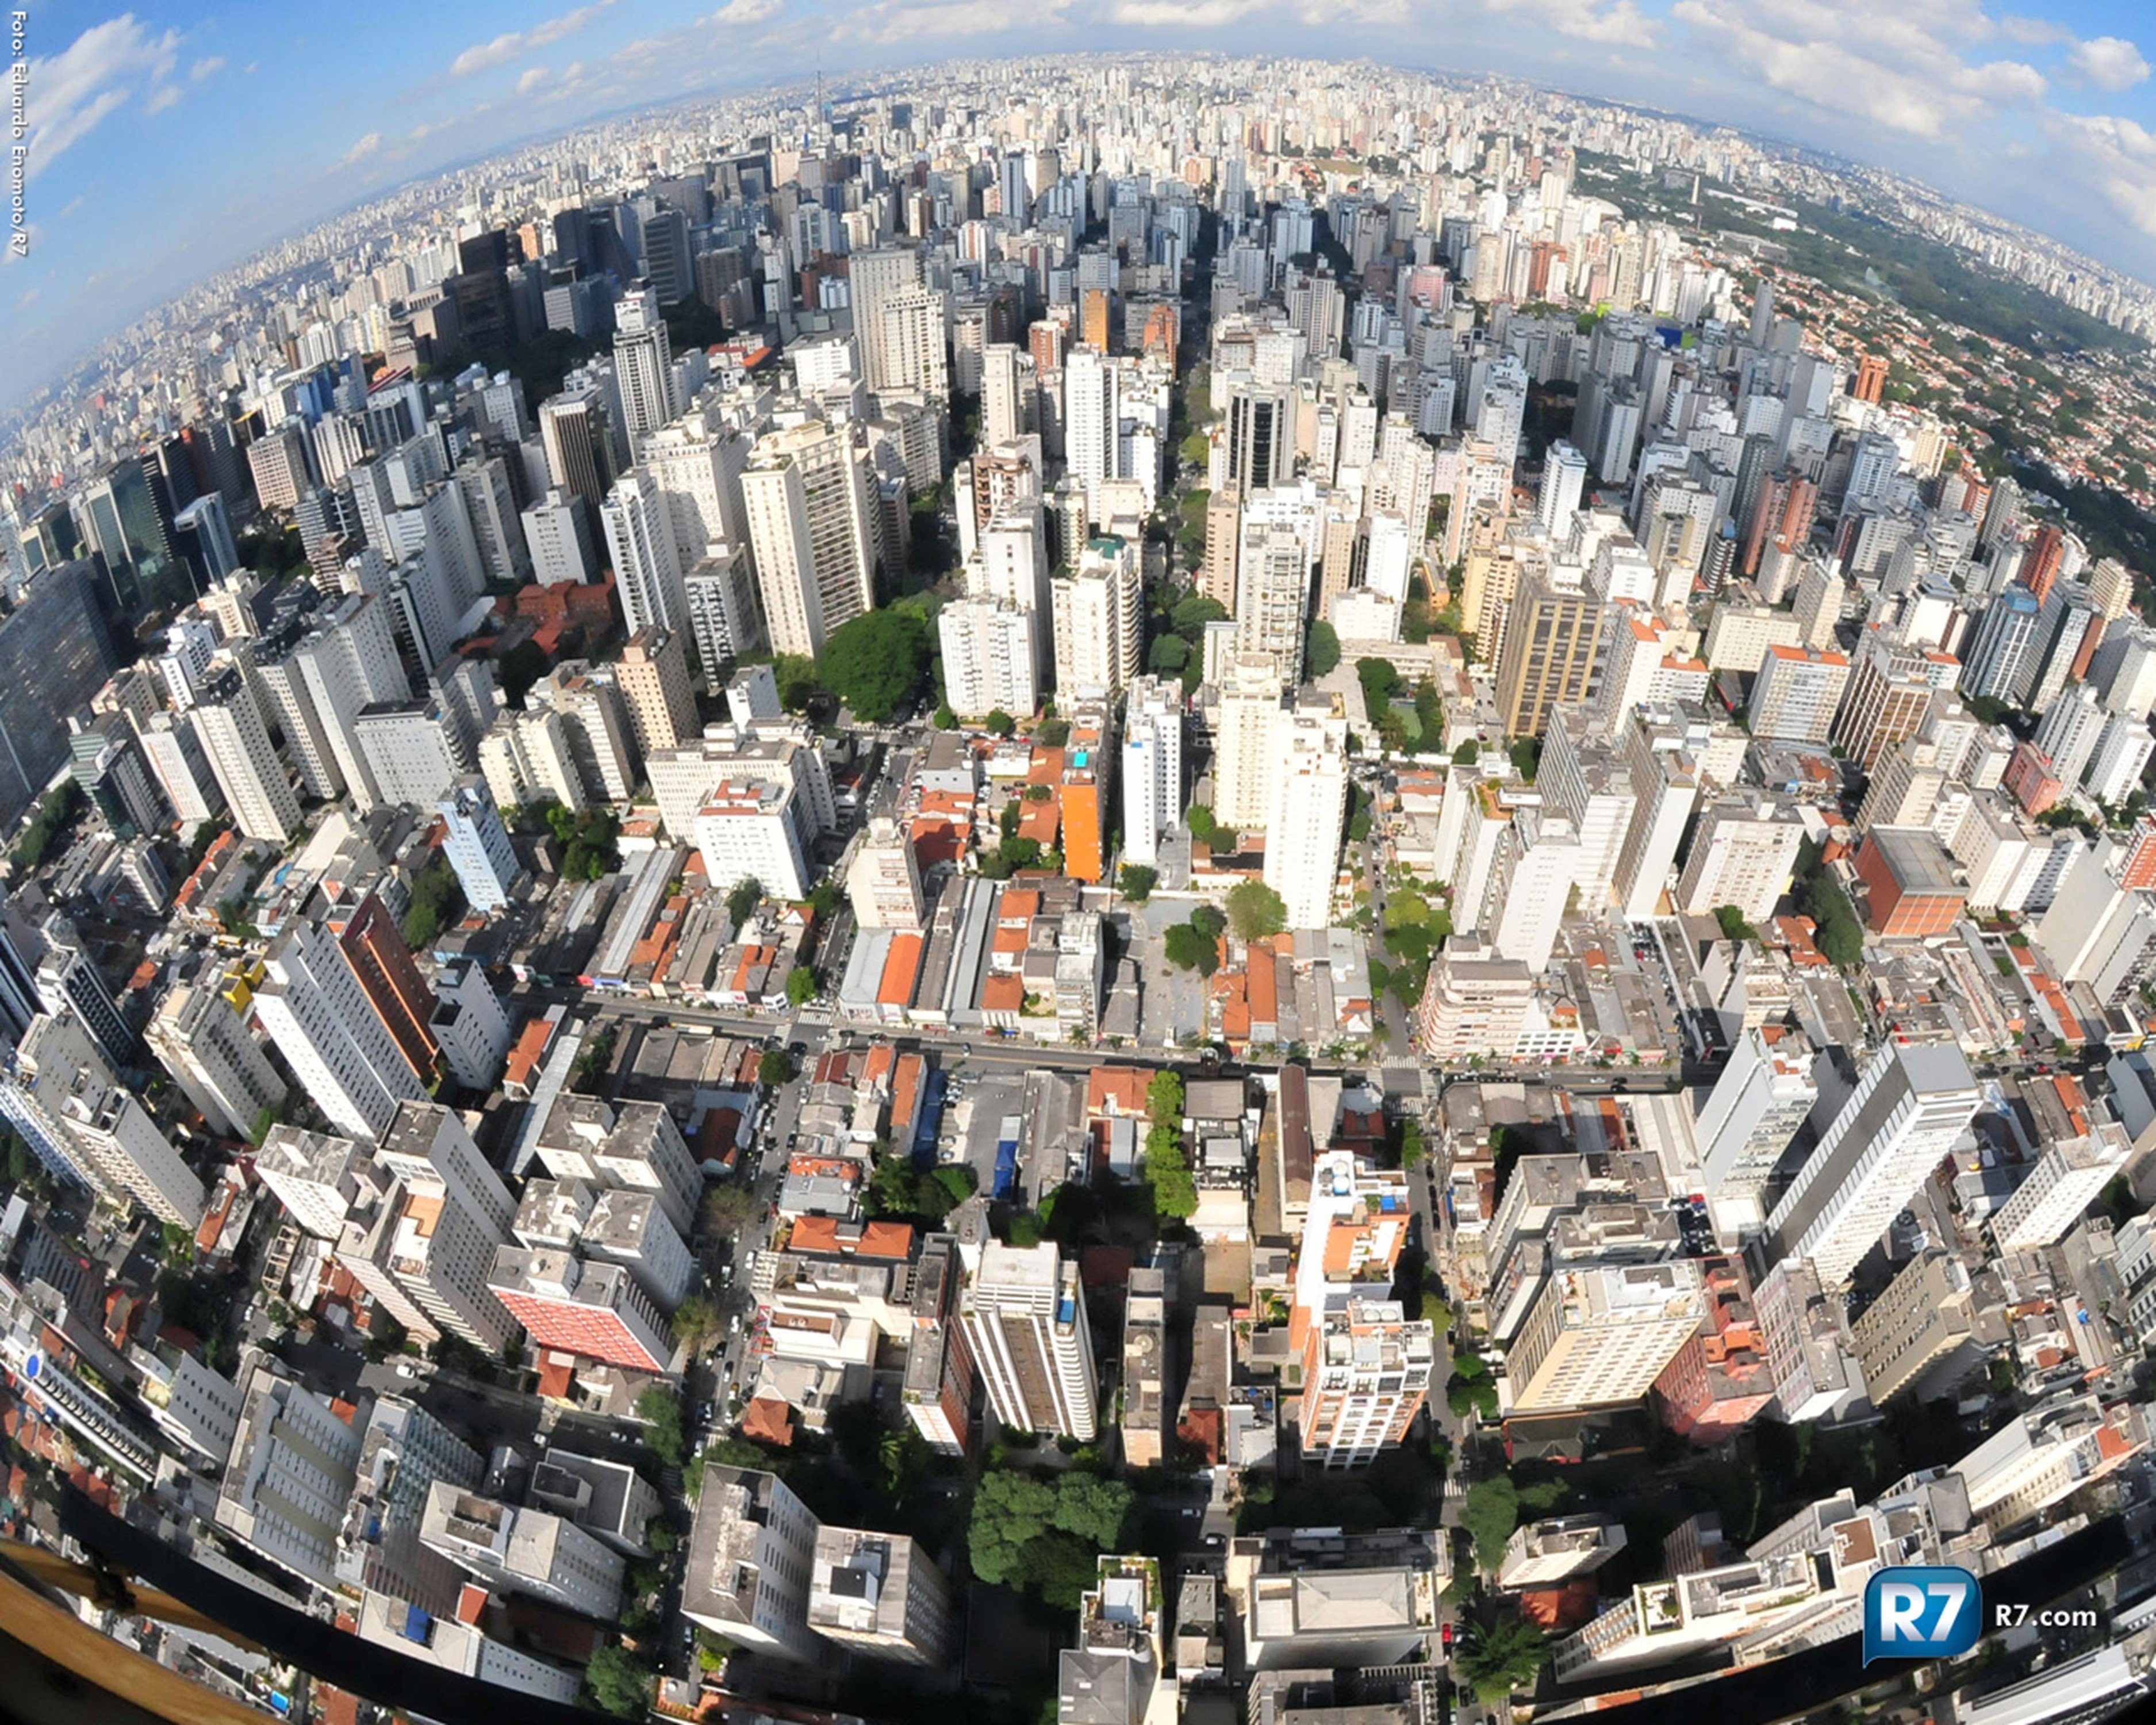 столица бразилии с высоты птичьего полета